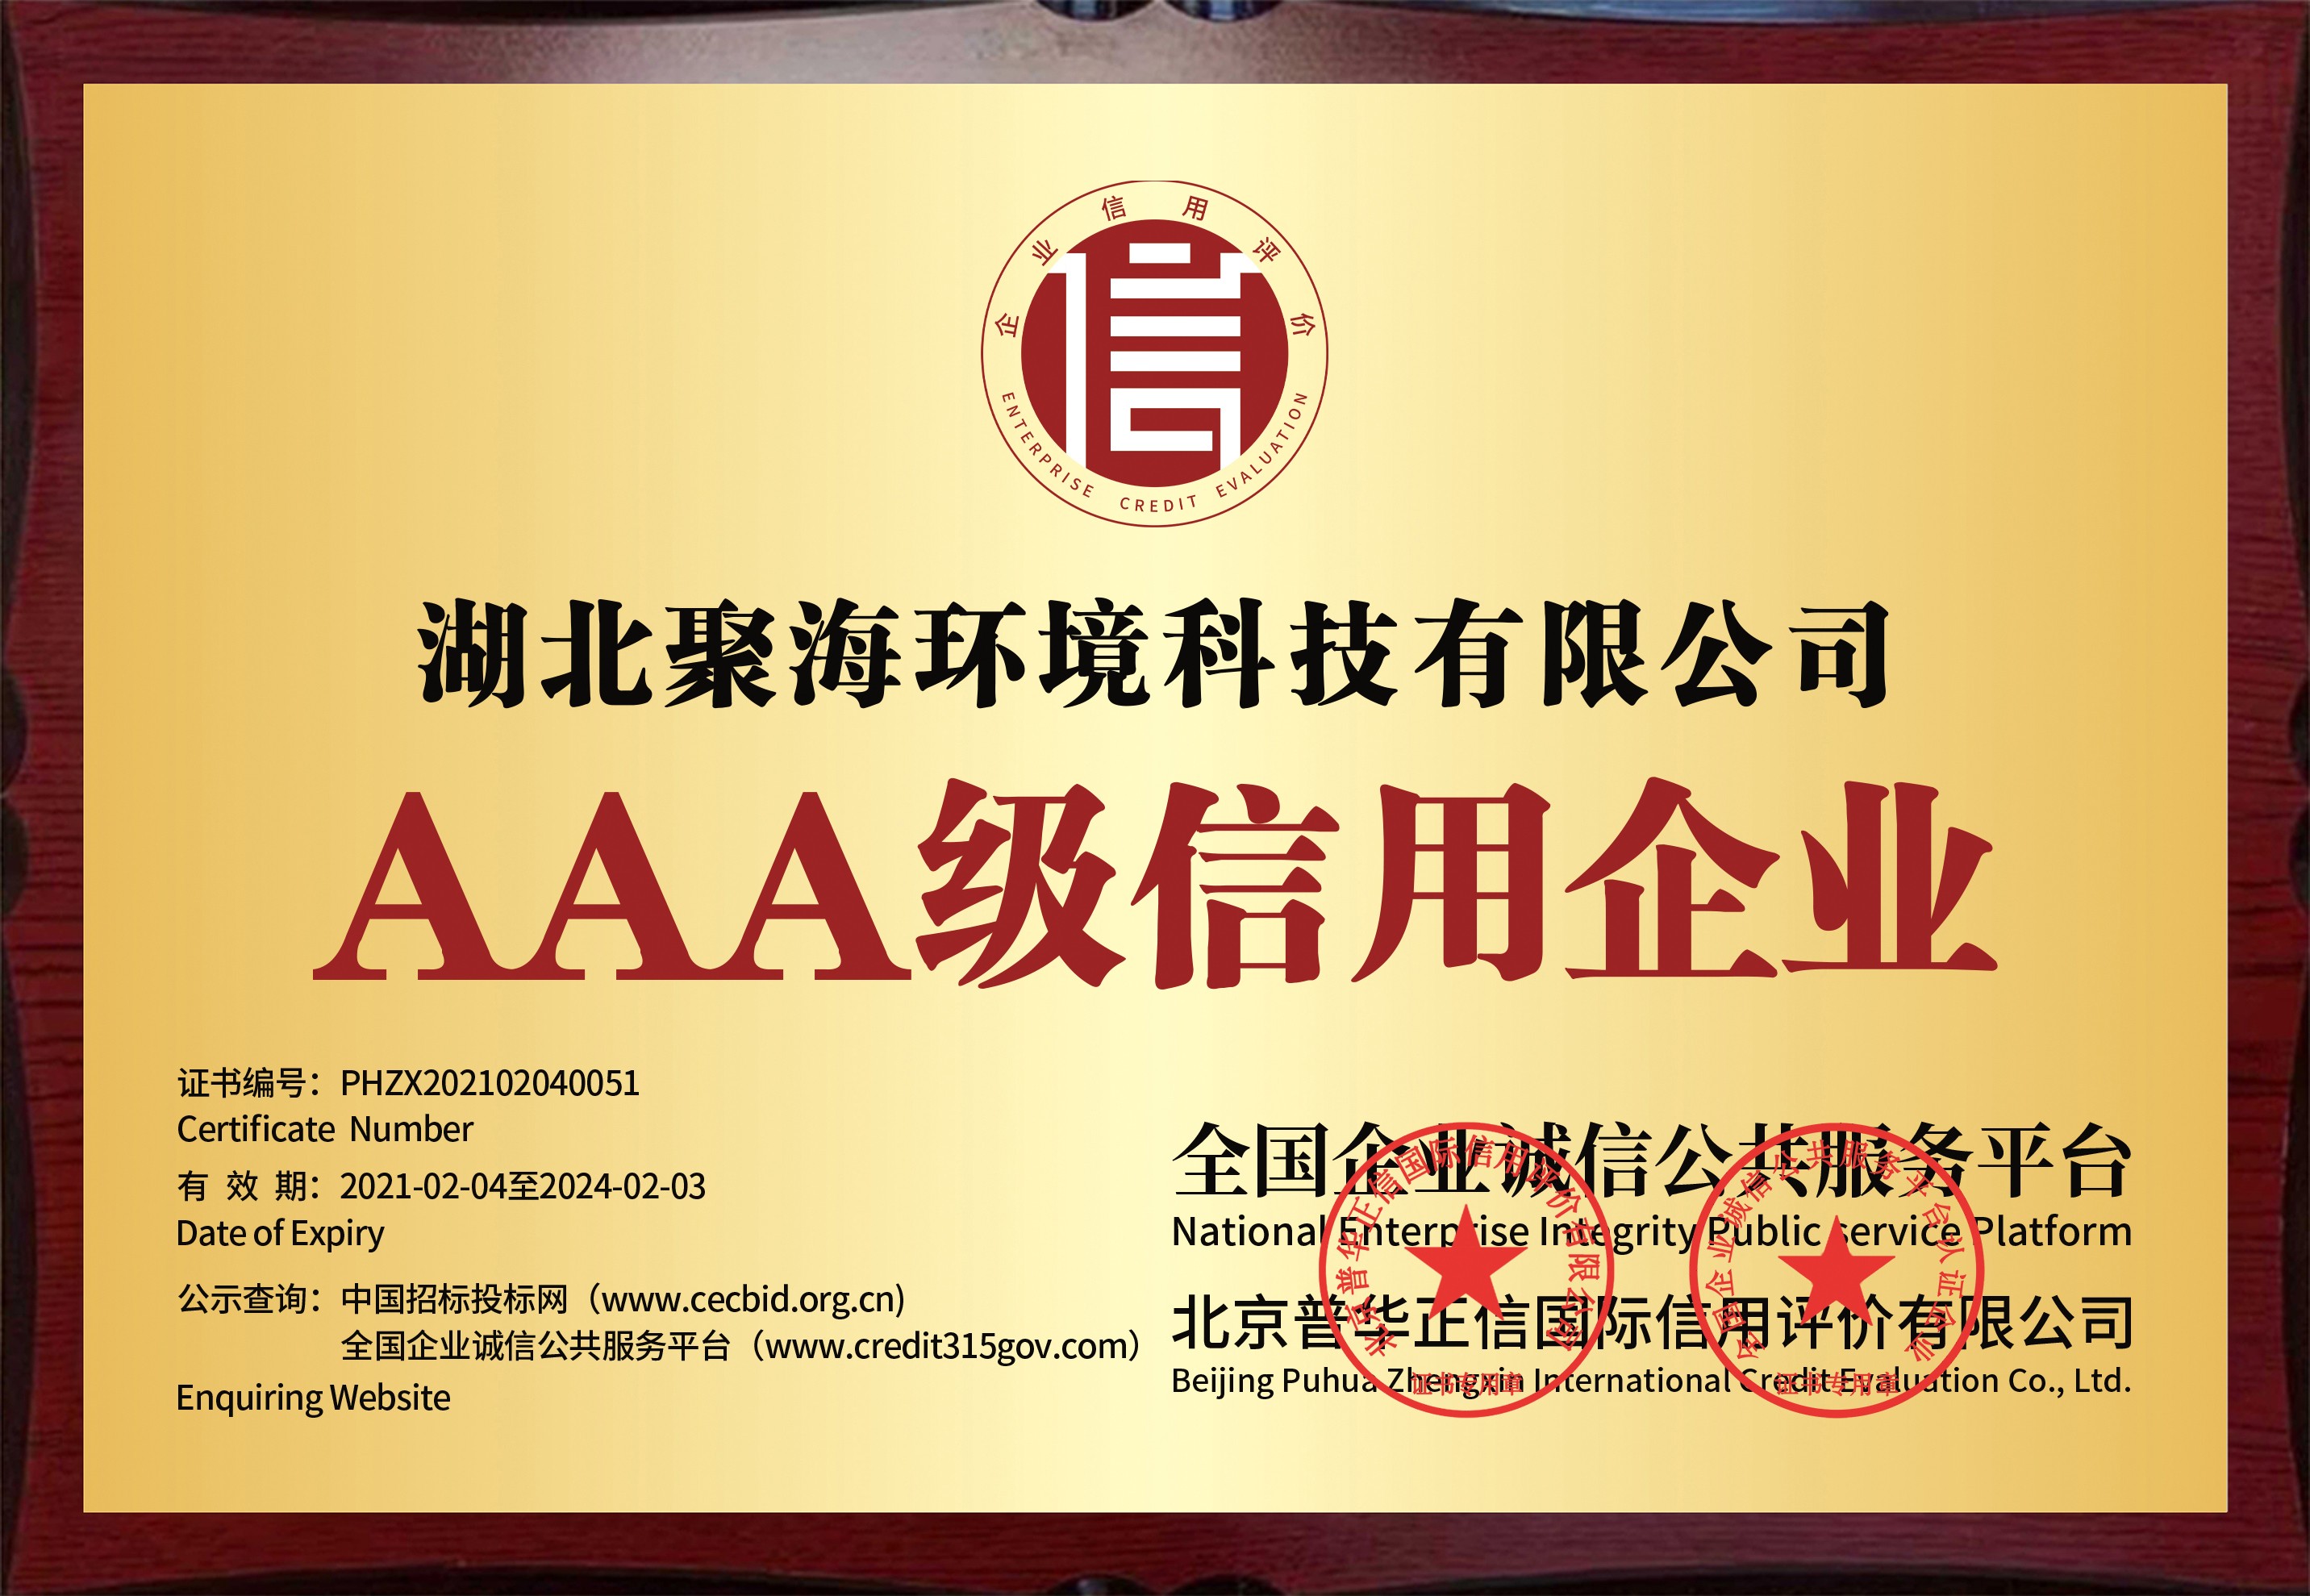 全国企业诚信公共服务平台及北京普华正信国际信用评价有限公司颁发的“AAA级信用企业”证书